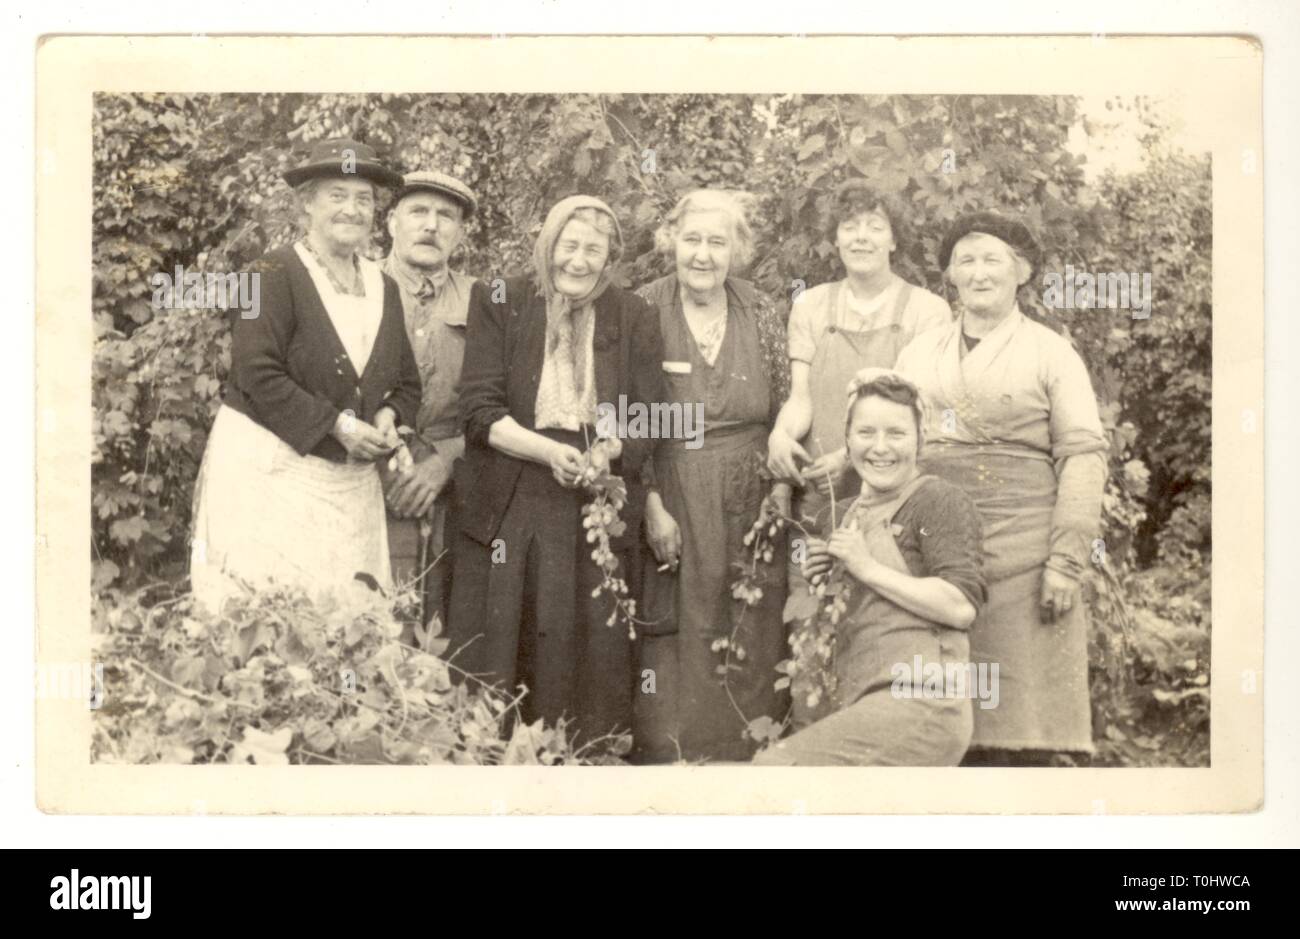 Carte postale originale et magnifique des années 1930 ou 1940, composée de plusieurs amateurs de sauts souriants, de famille et d'amis, qui se sont amusés pendant des vacances de travail, dans un jardin de houblon, des journées passées, de nombreux personnages, des cours de travail, Kent, Angleterre, Royaume-Uni Banque D'Images